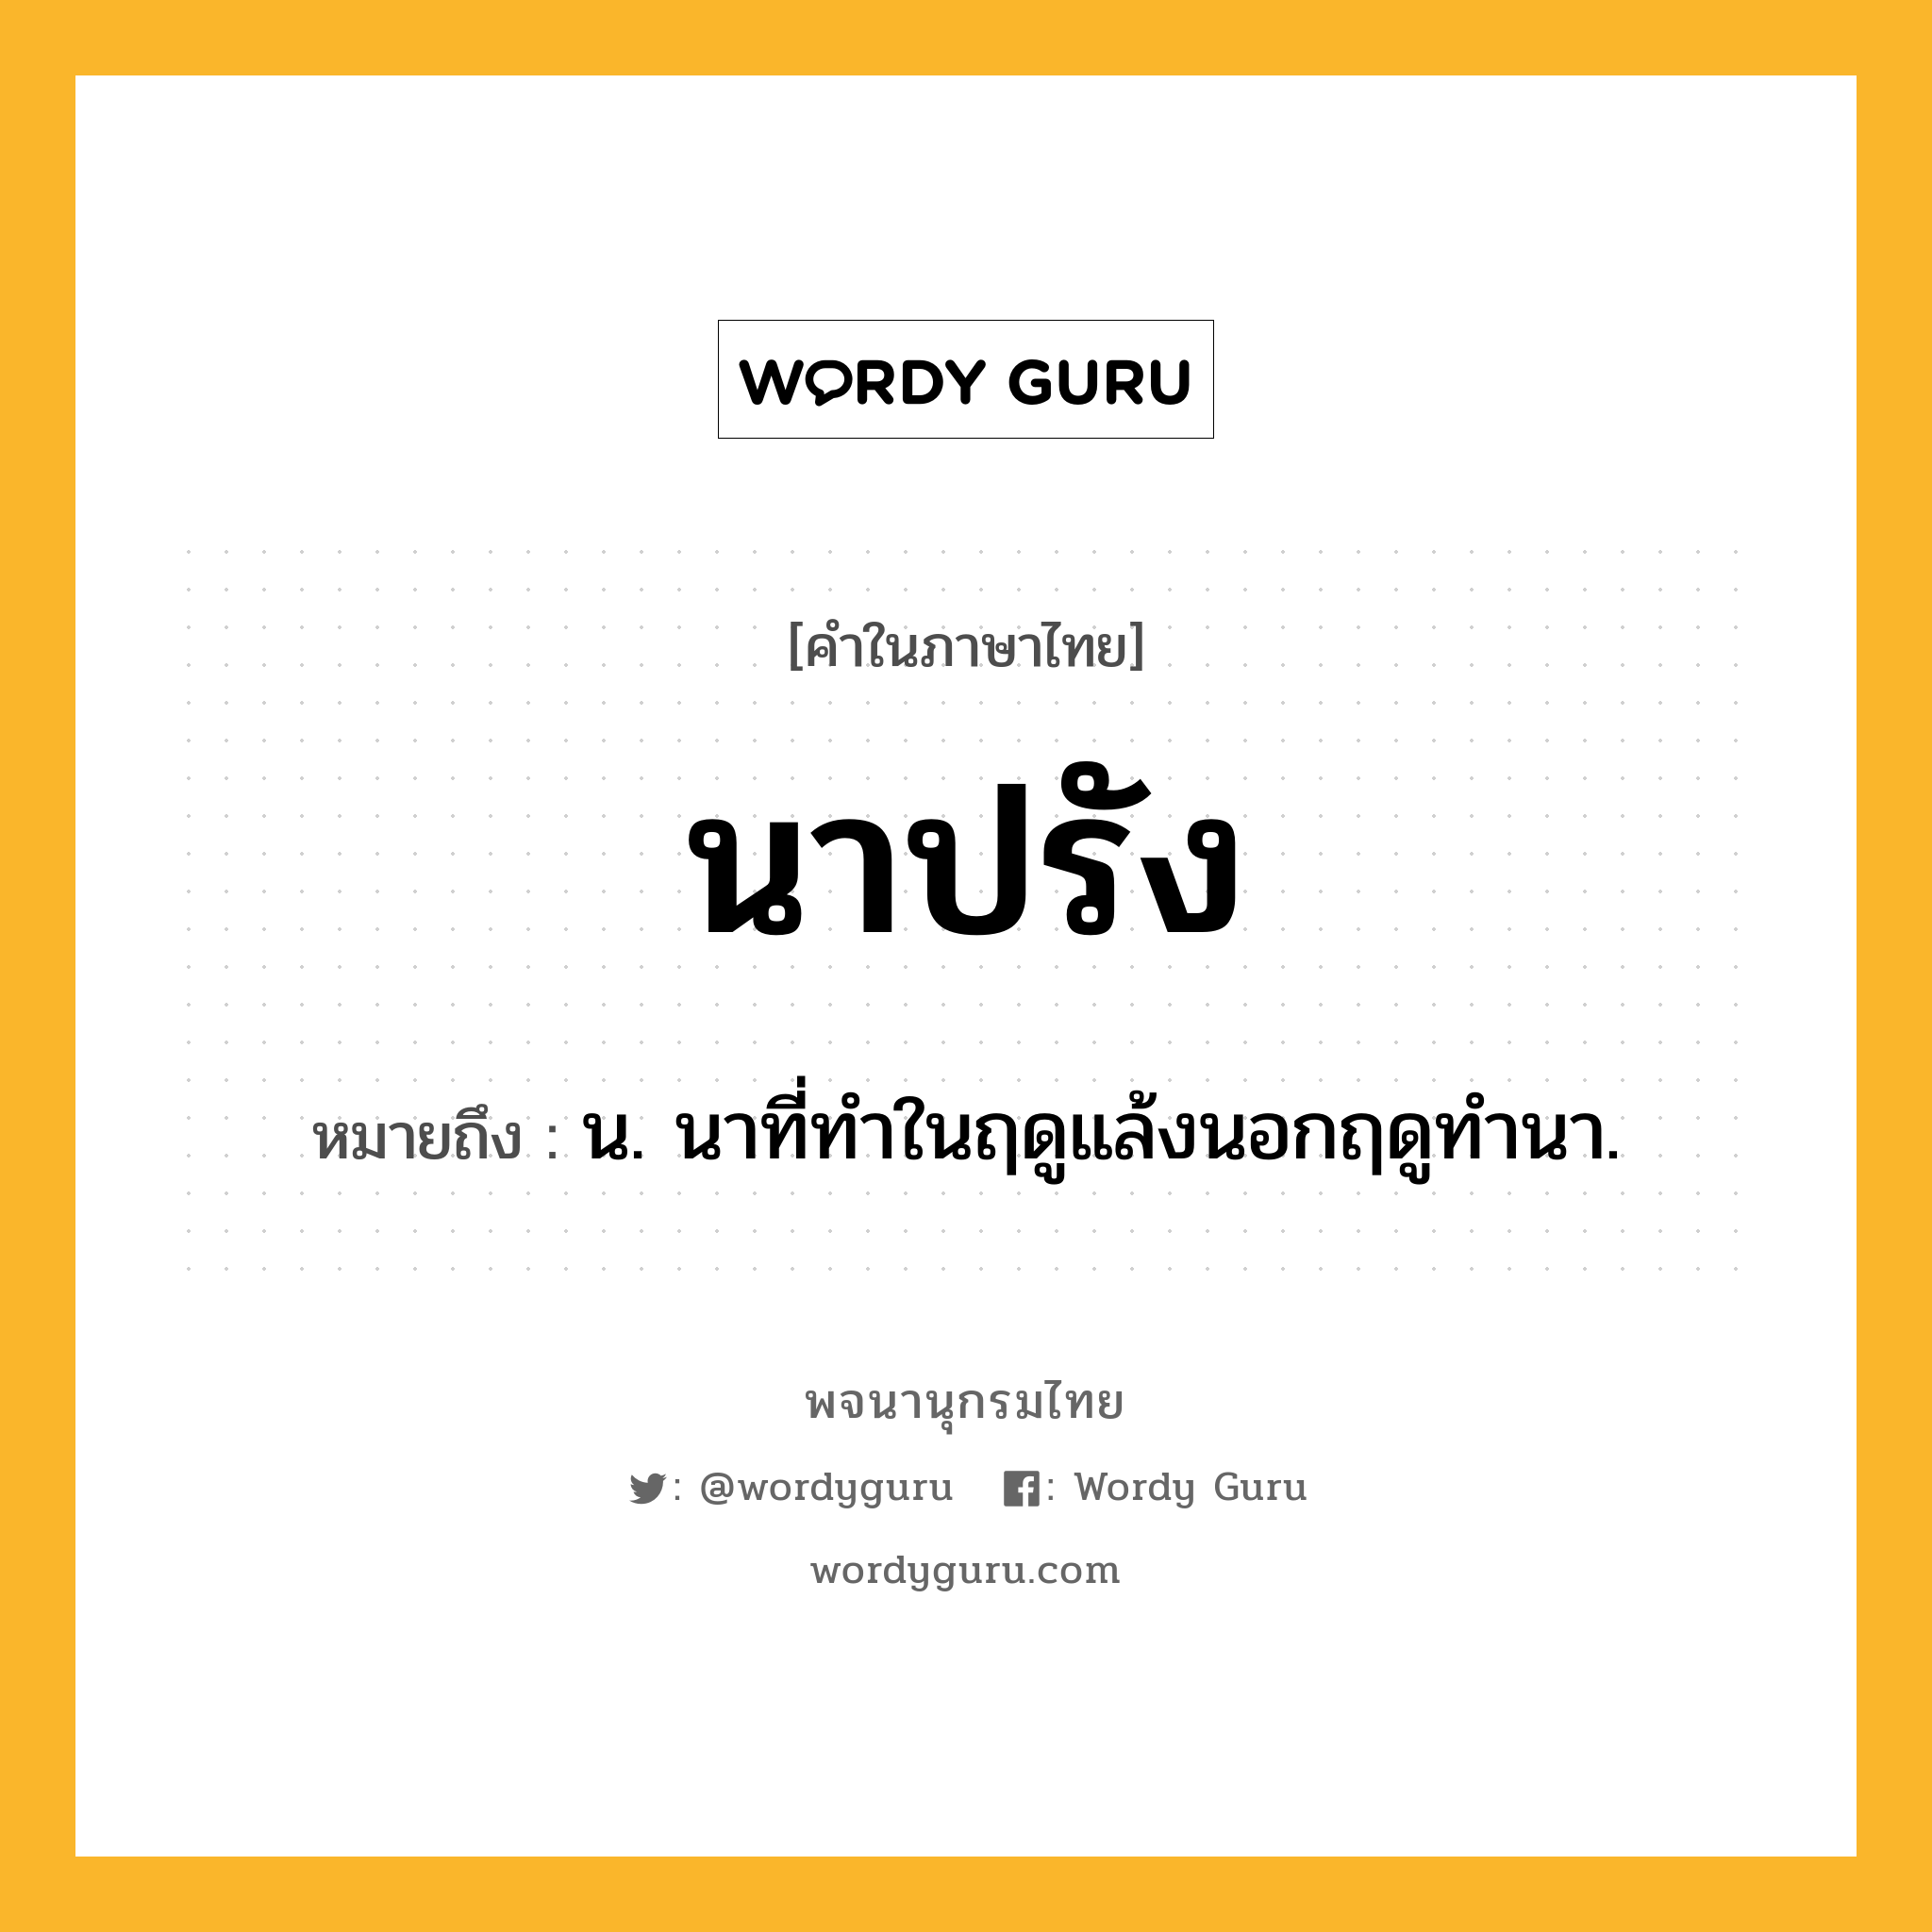 นาปรัง หมายถึงอะไร?, คำในภาษาไทย นาปรัง หมายถึง น. นาที่ทำในฤดูแล้งนอกฤดูทํานา.